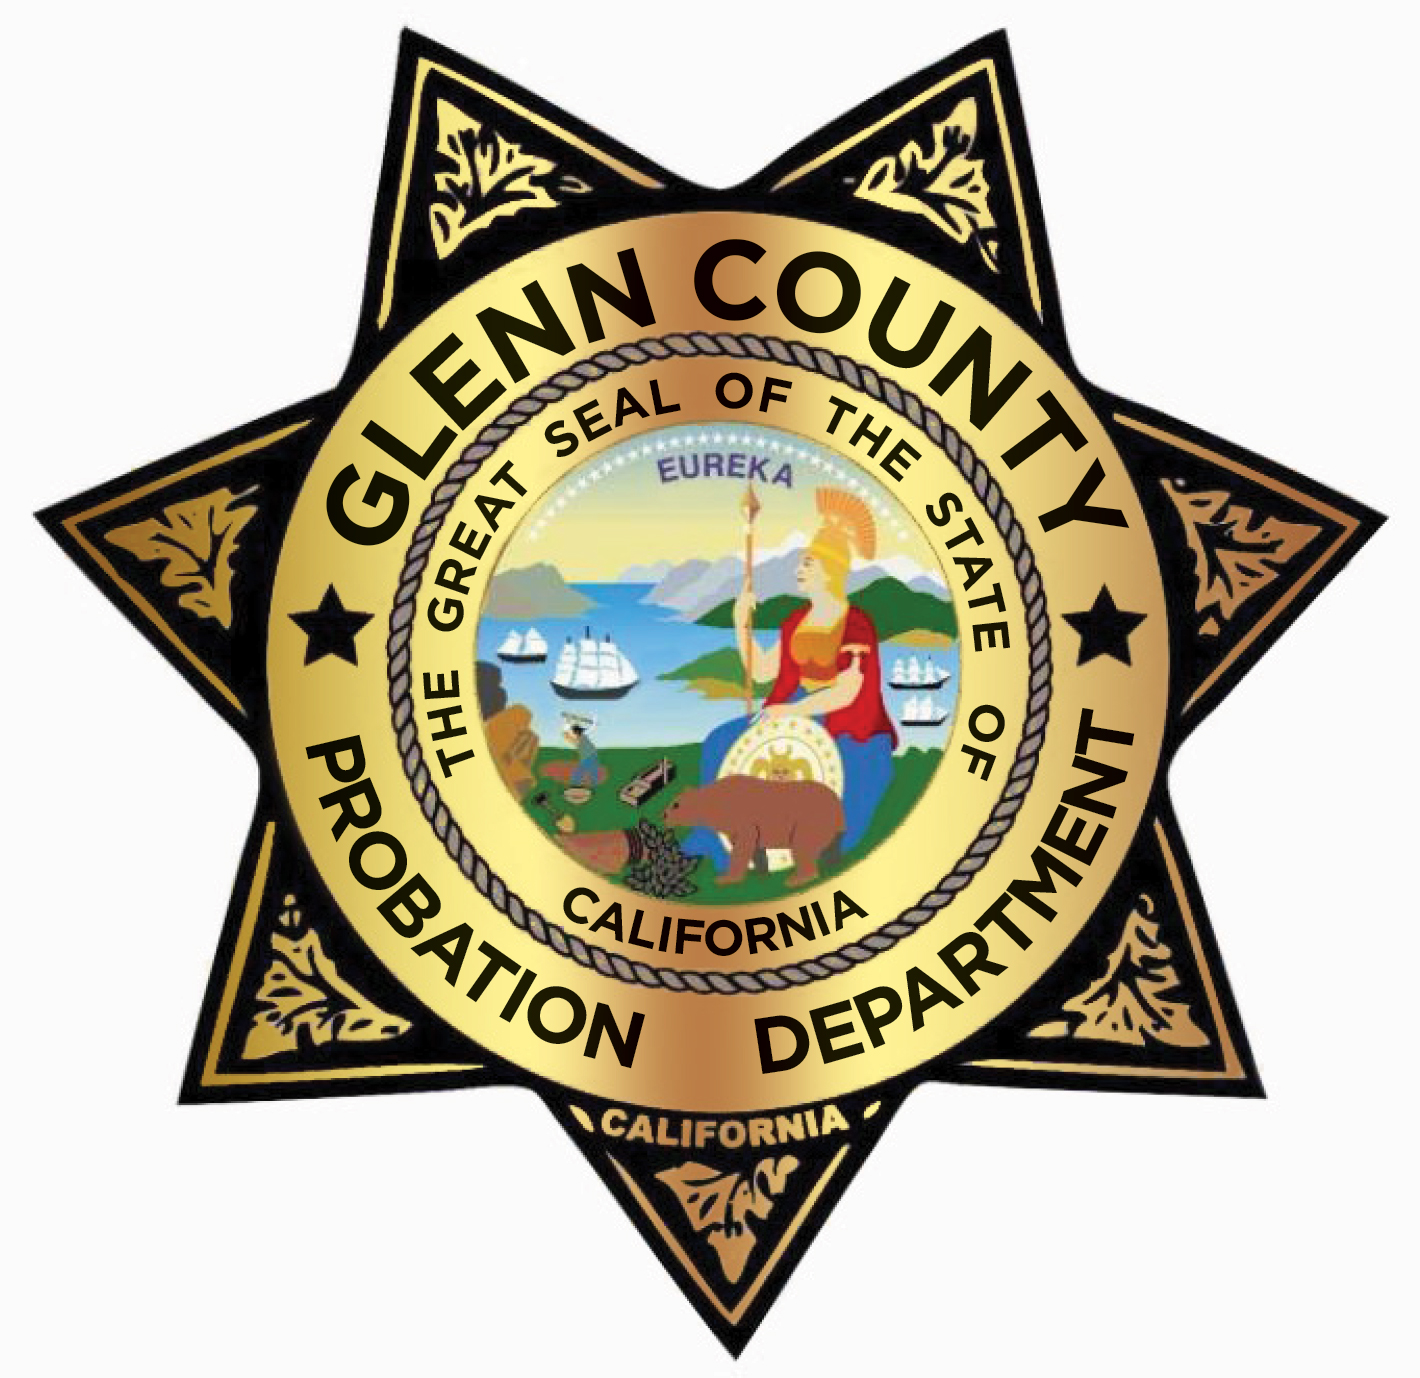 Glenn County Probation logo